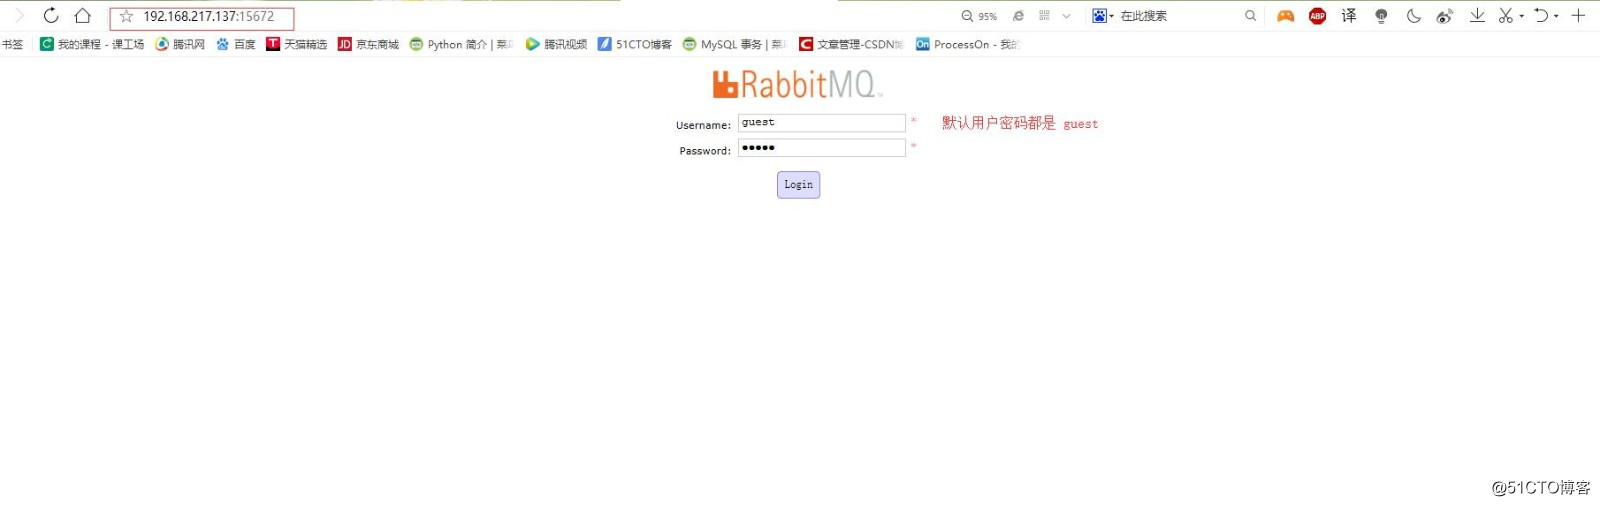 千万PV 网站架构之 RabbitMQ 消息列队